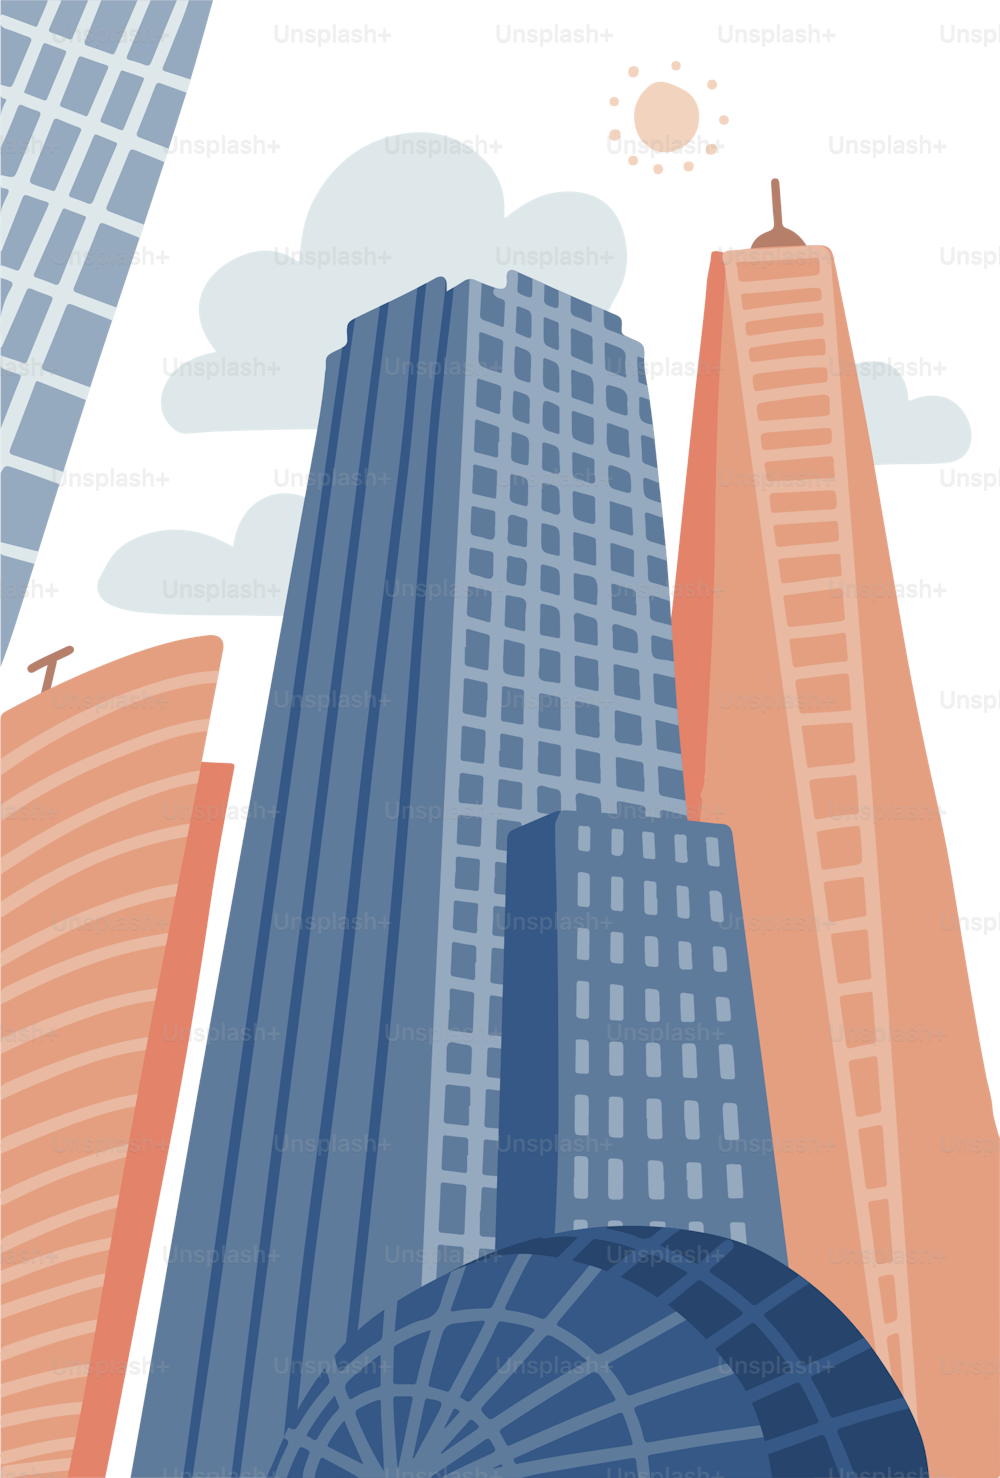 Cartoon moderne Stadt im flachen handgezeichneten Stil. Urbanes Stadtbild mit Wolkenkratzern, städtischem Eigentum. Vektorillustration vertikales Panorama, modernes Stadtbild